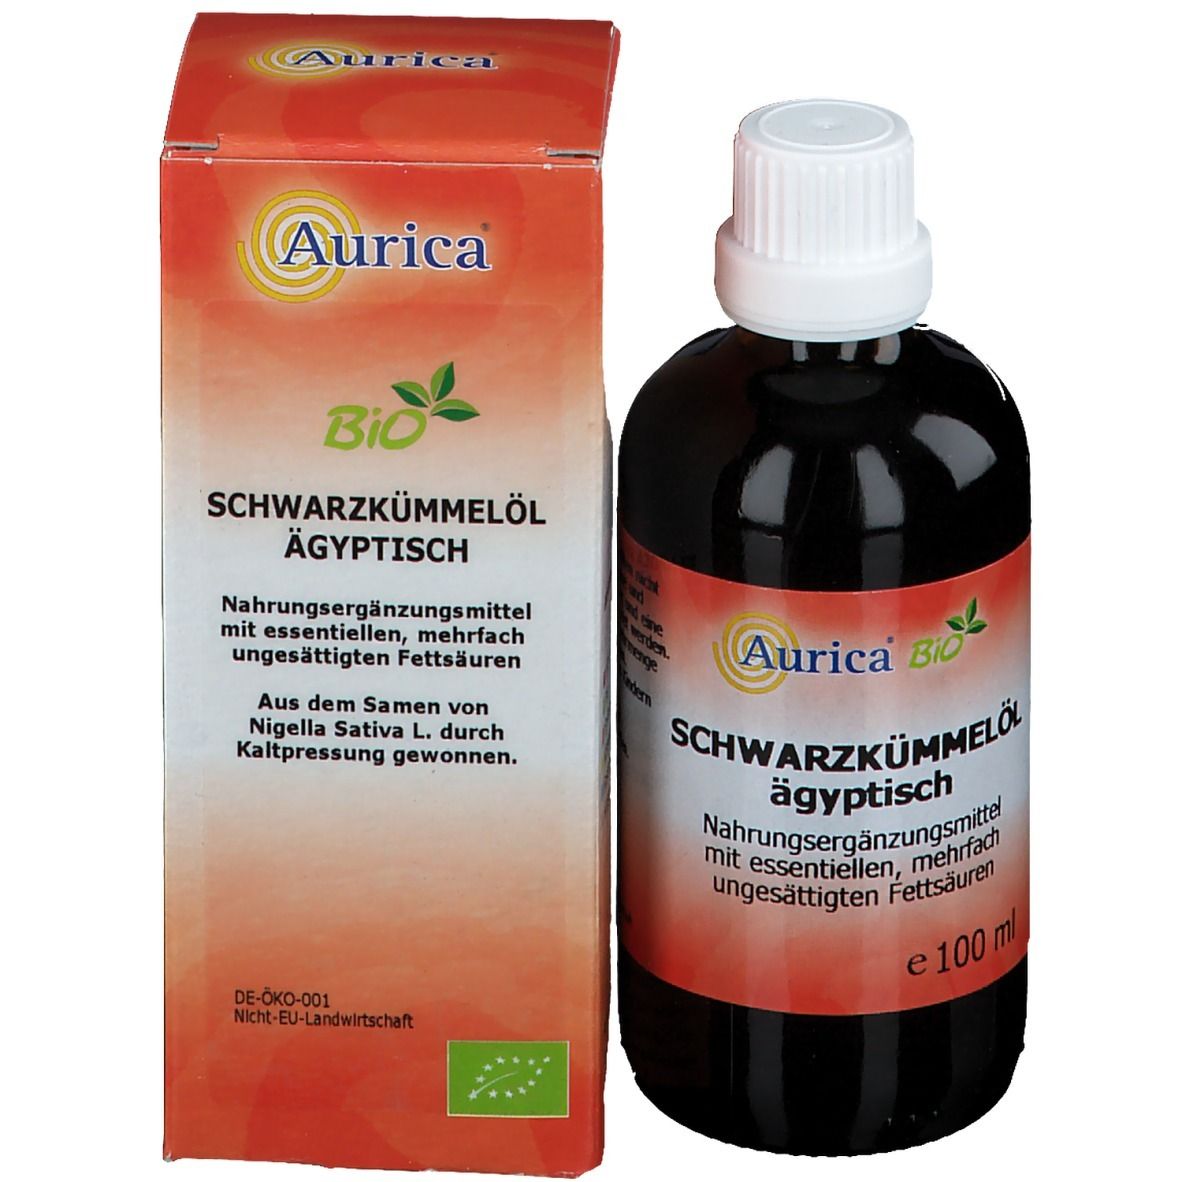 Aurica® Bio Schwarzkümmelöl ägyptisch